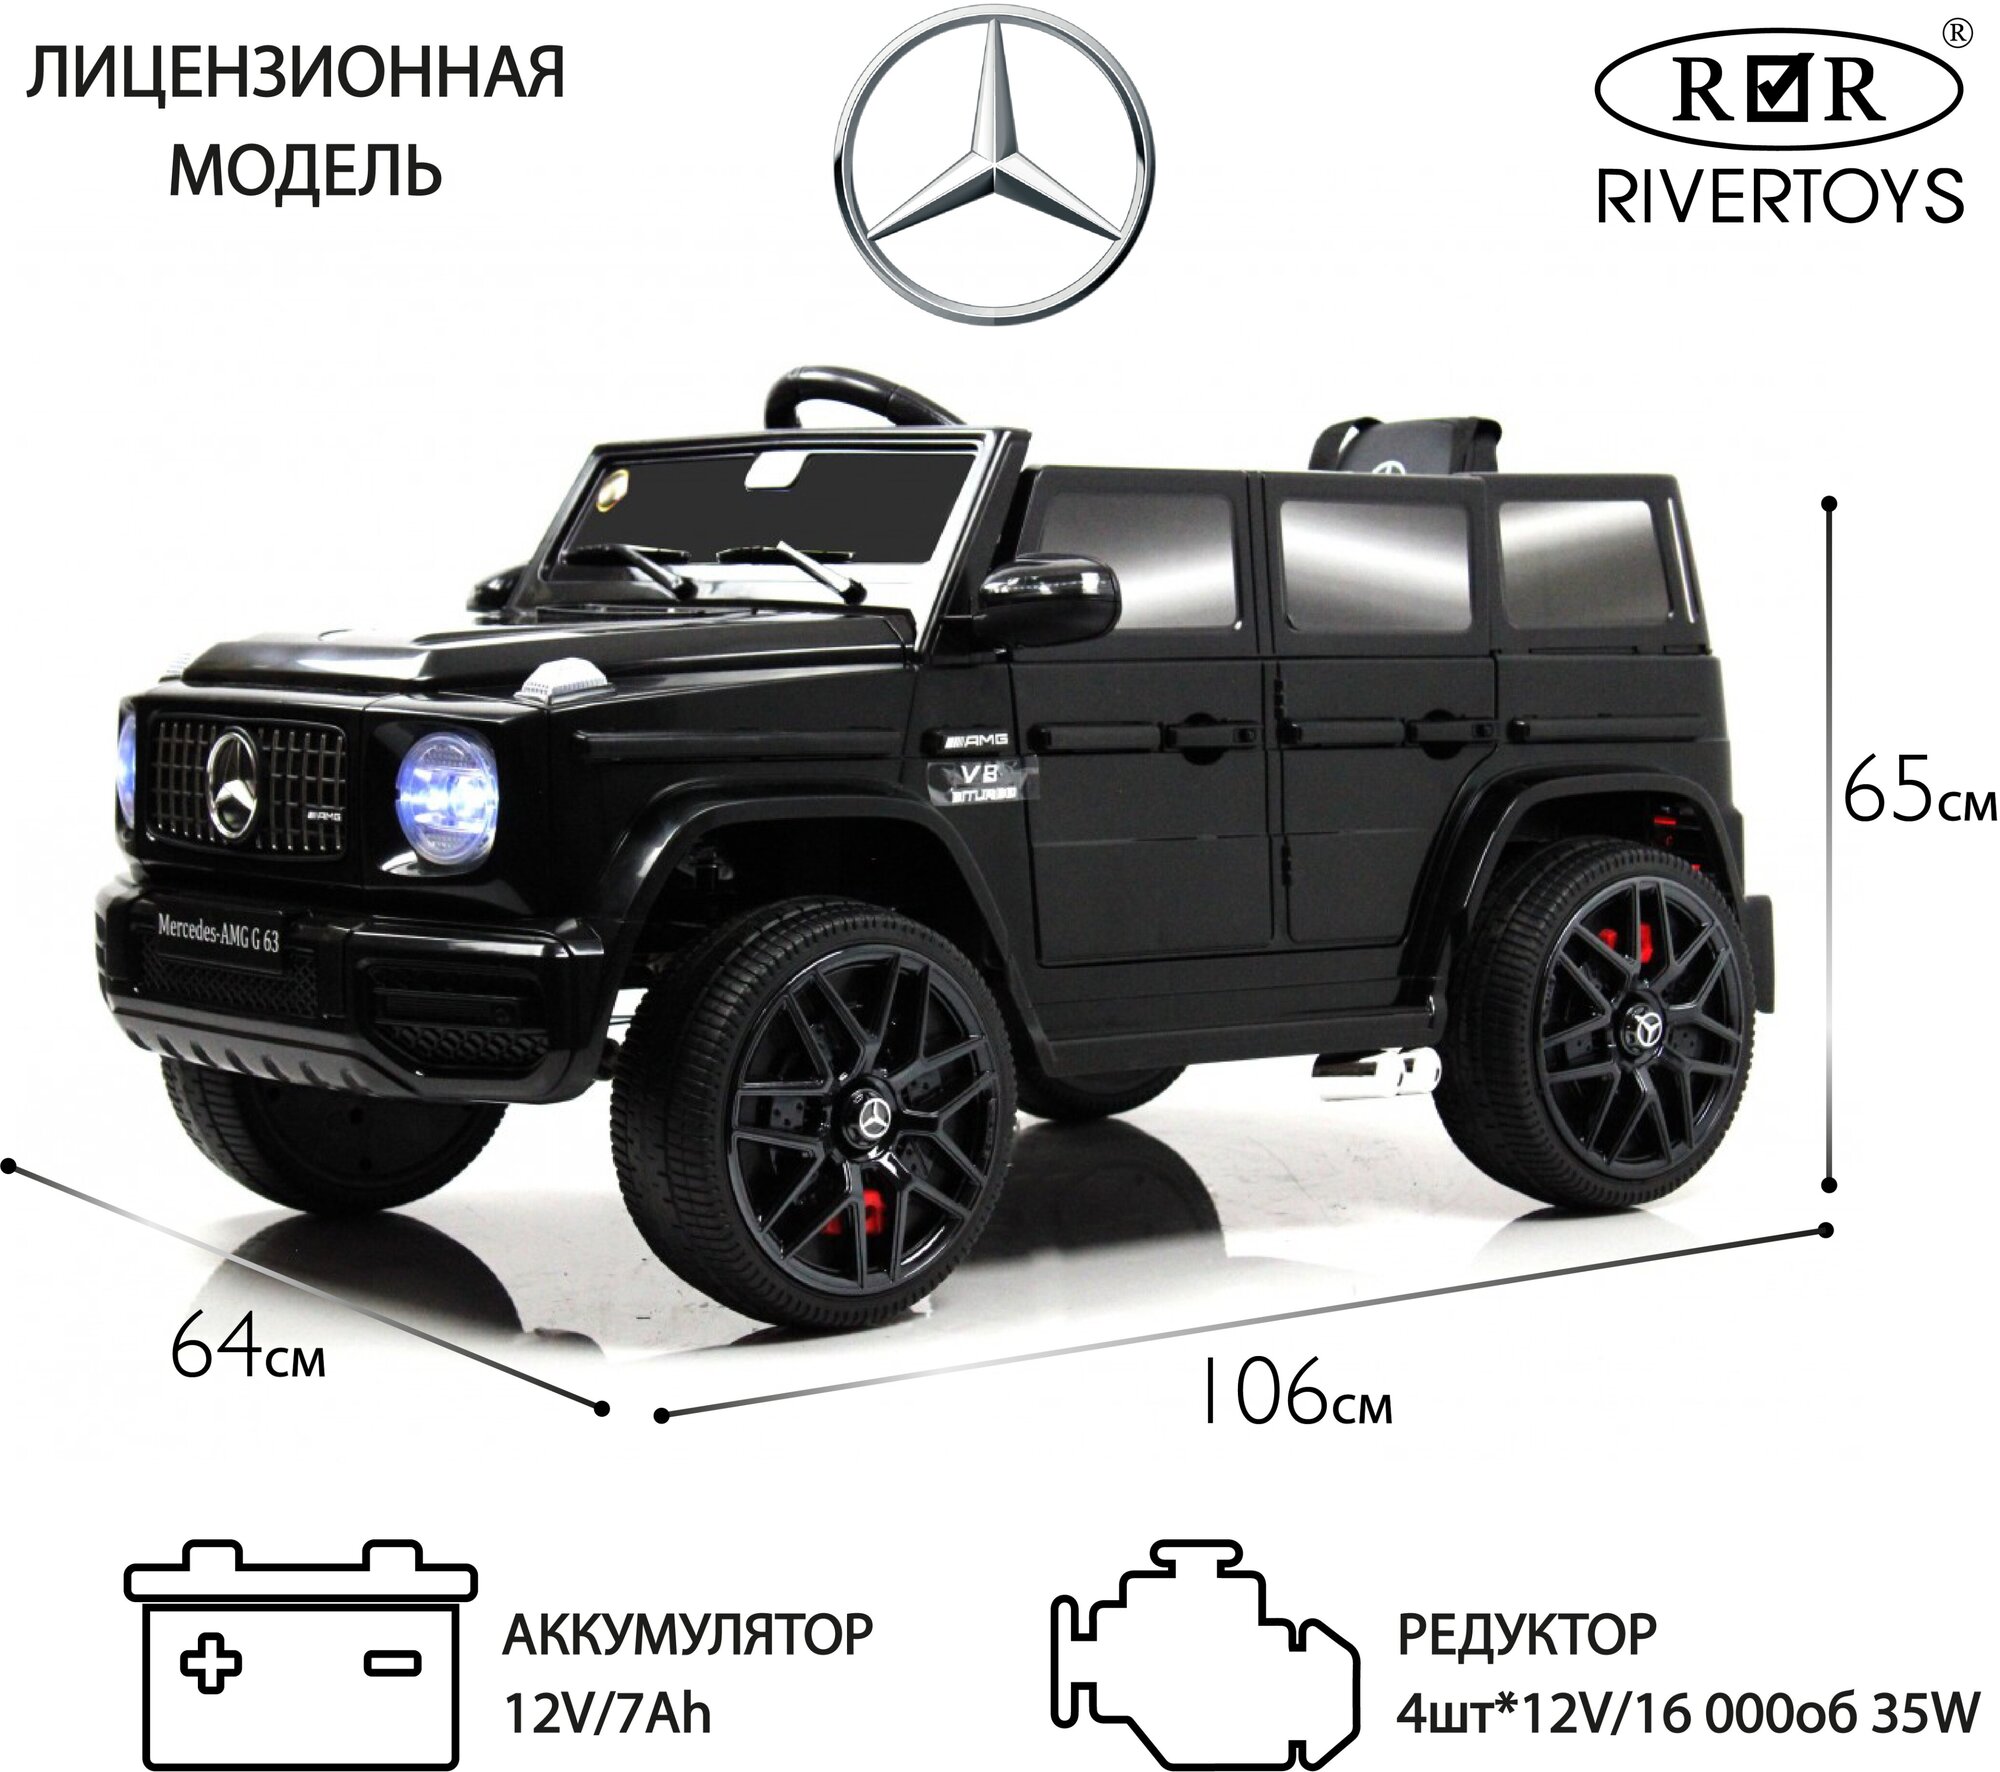 RiverToys Детский электромобиль Mercedes-Benz G63 (O111OO) черный глянец